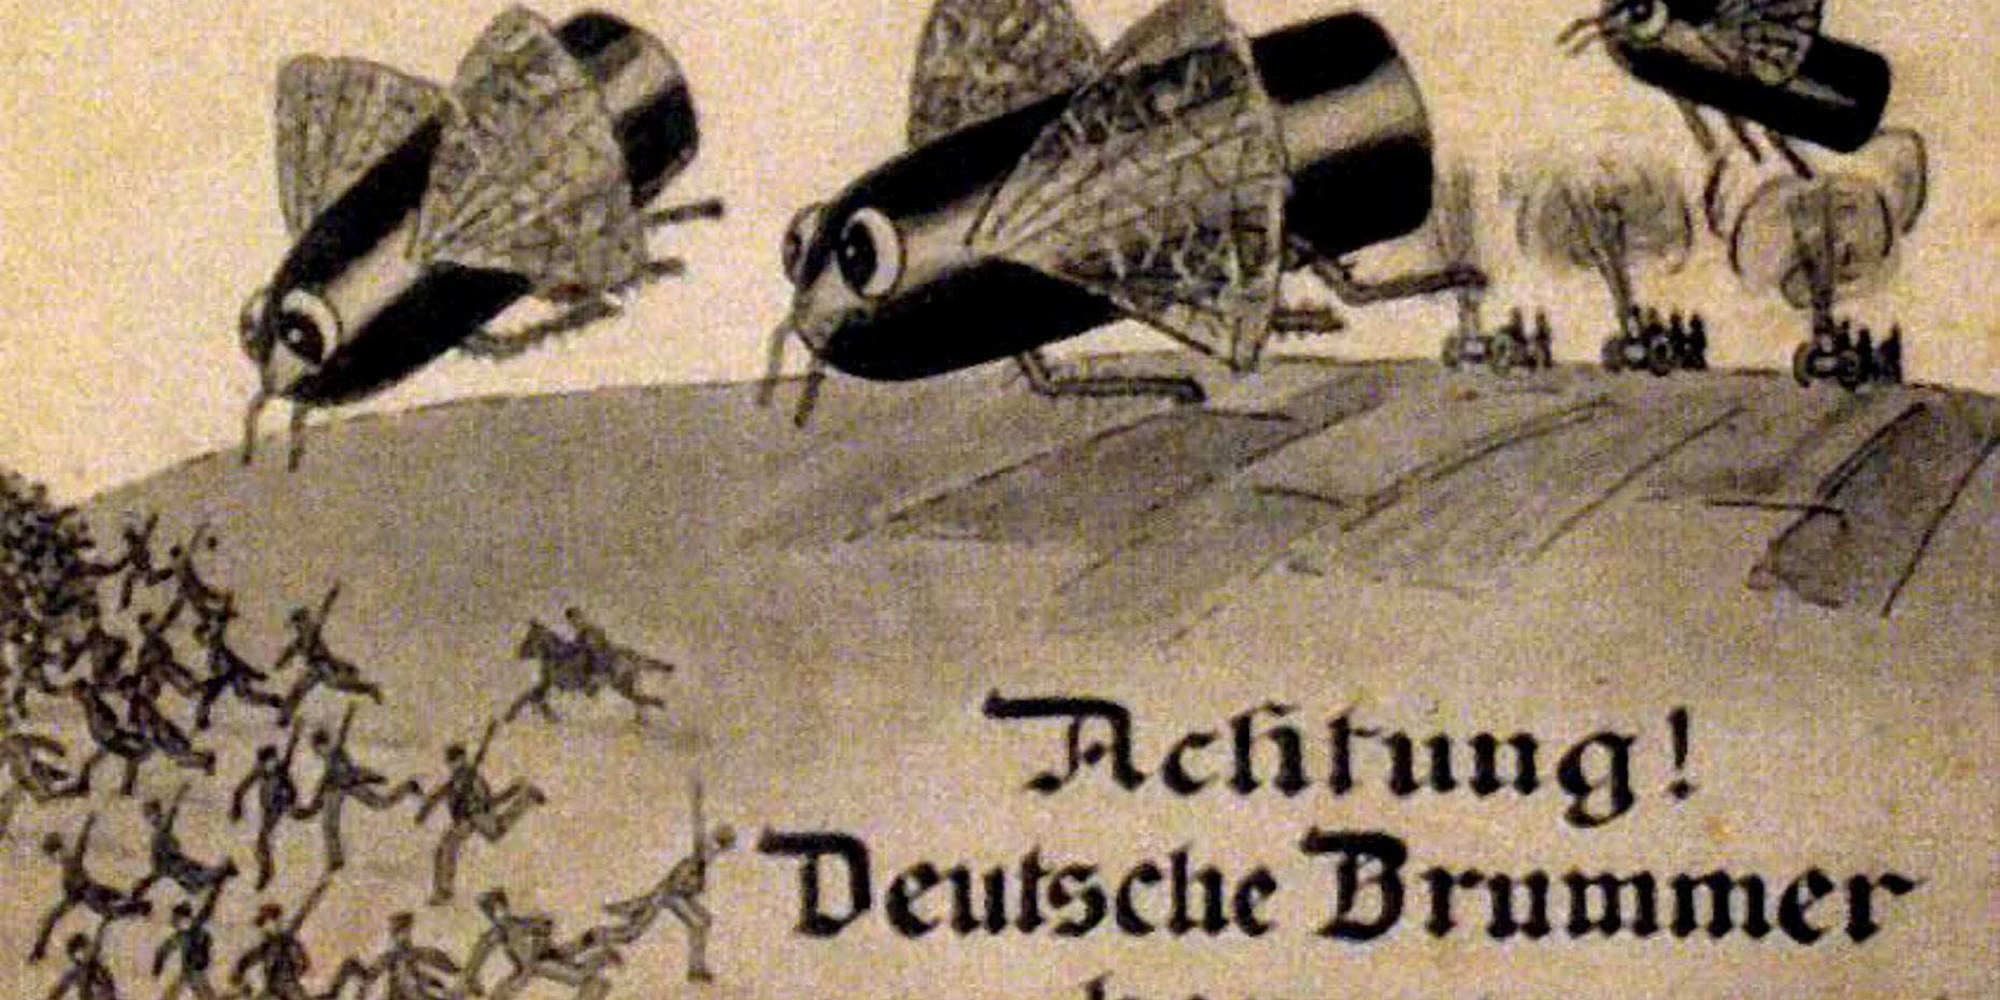 Die Dicke Berta im Fliegenschwarm zeigte eine Karikatur aus dem Oktober 1915.